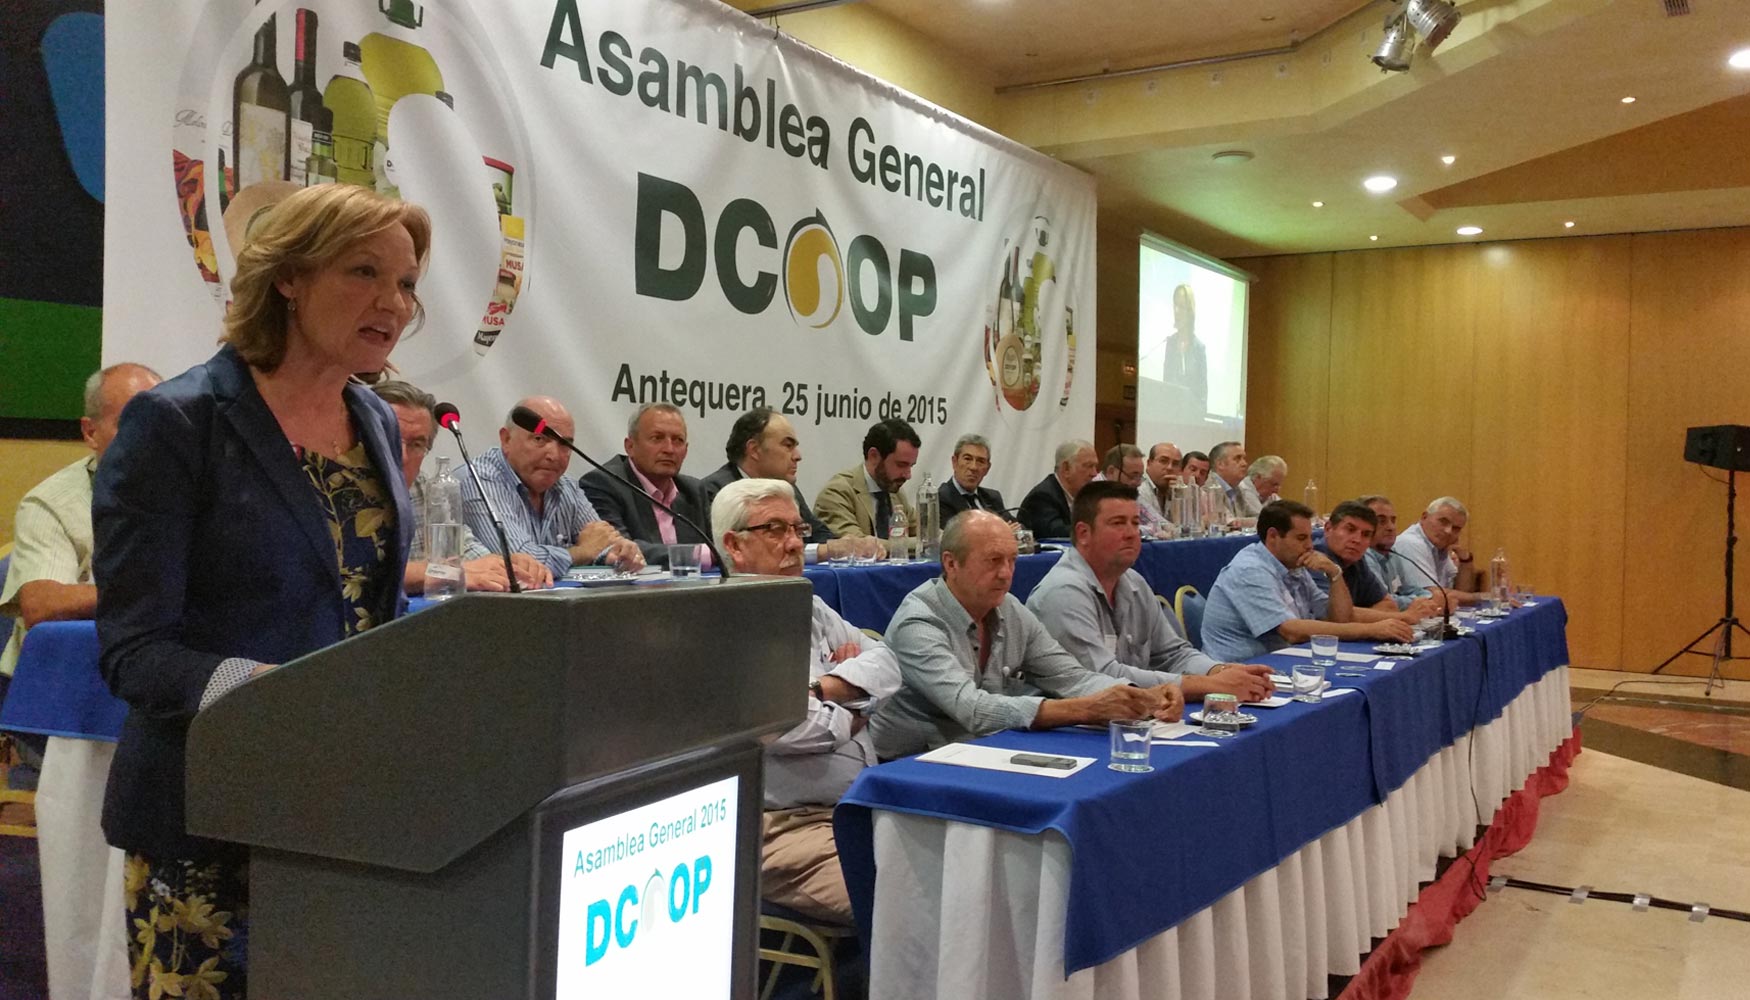 Acto de clausura de la Asamblea General Dcoop 2015, en el que ha intervenido la consejera de Agricultura, Pesca y Desarrollo Rural, Carmen Ortiz...